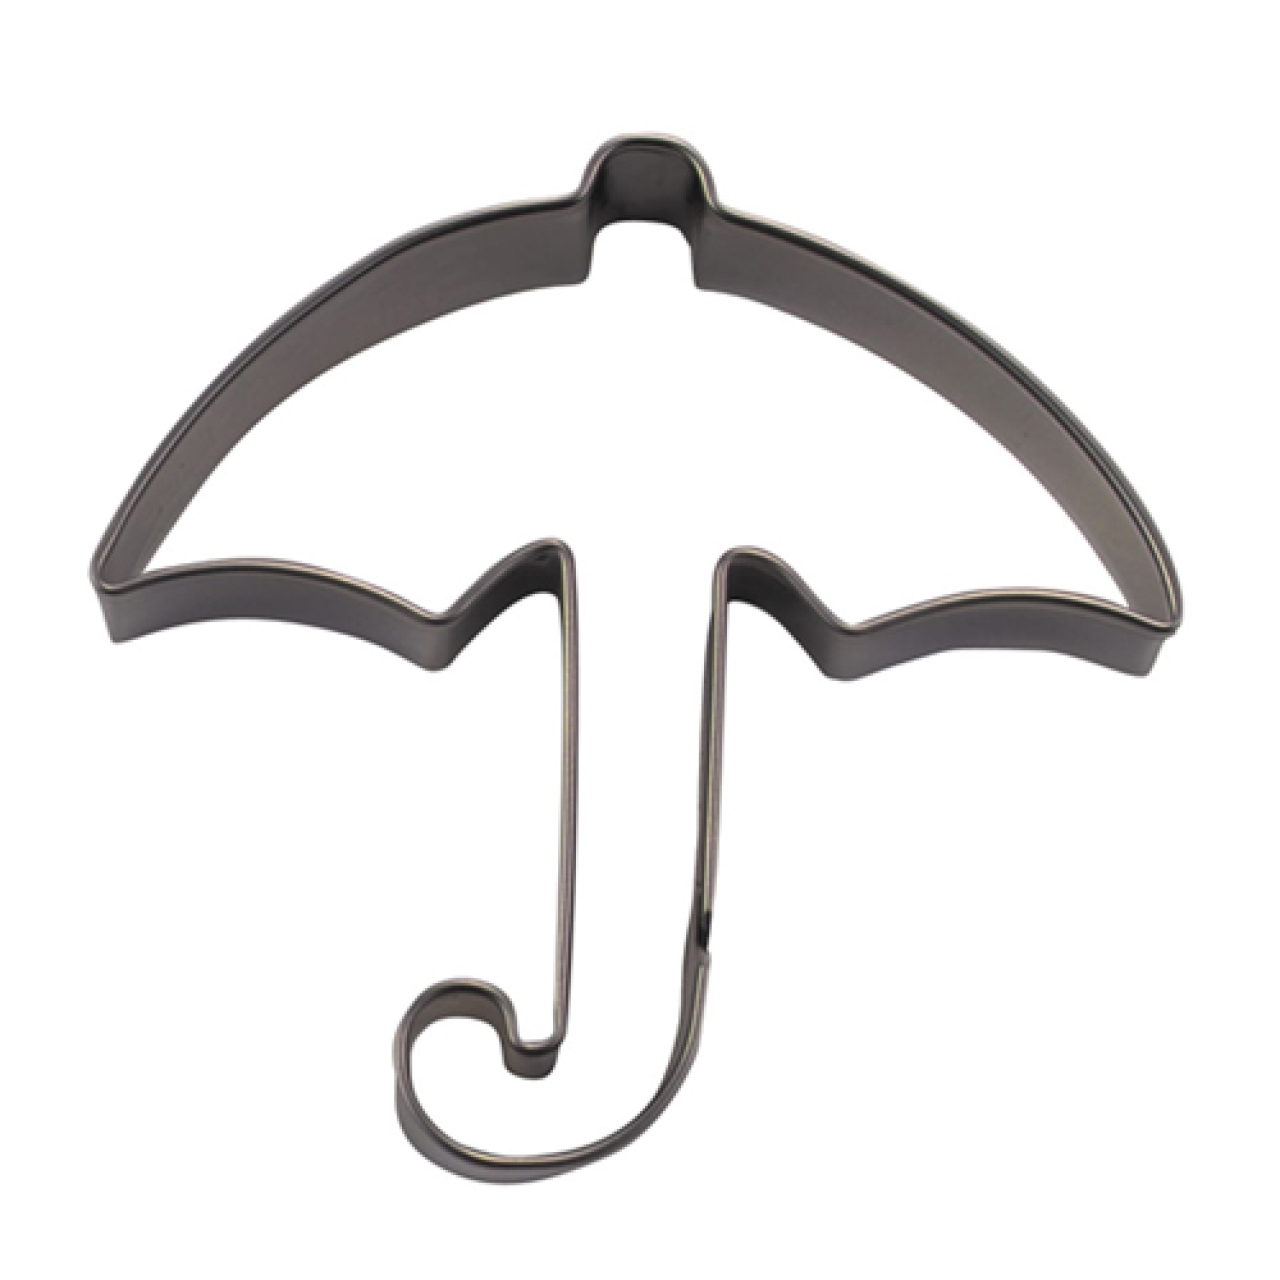 Ausstecher / Ausstechform "Regenschirm" für Kekse & Plätzchen, 8 cm